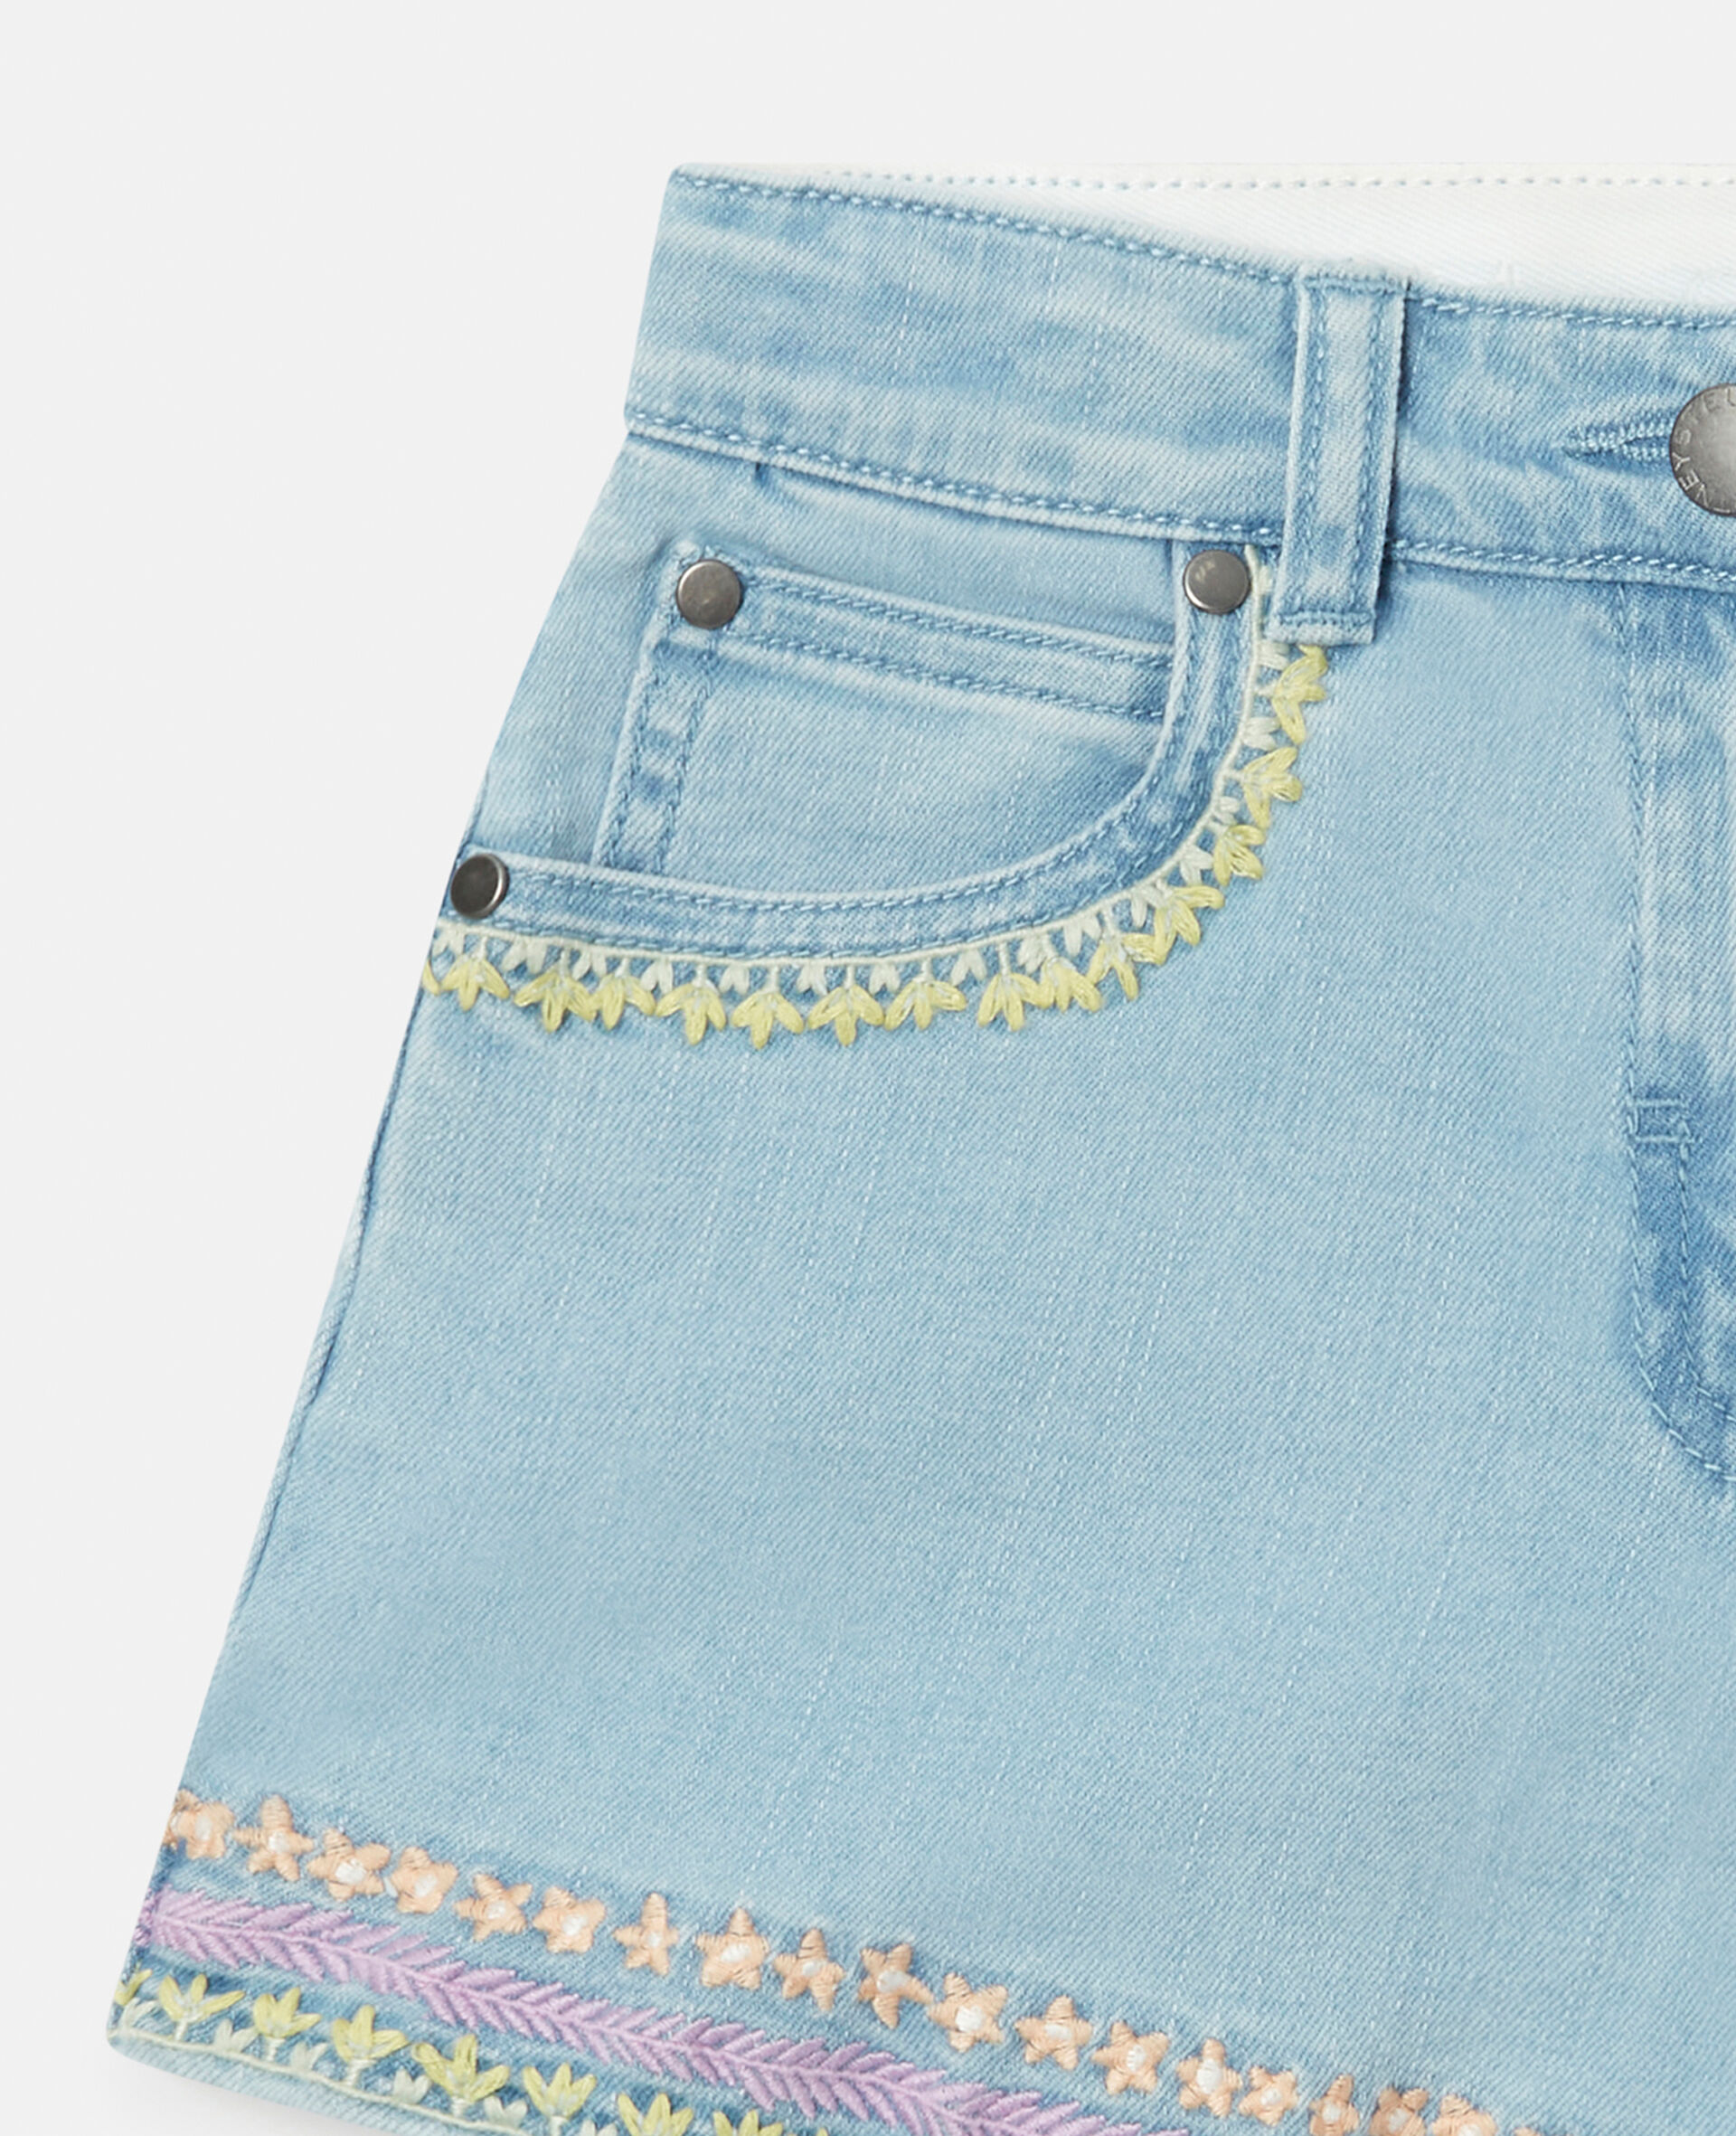 Flower Line Embroidery Denim Shorts-Blue-large image number 1